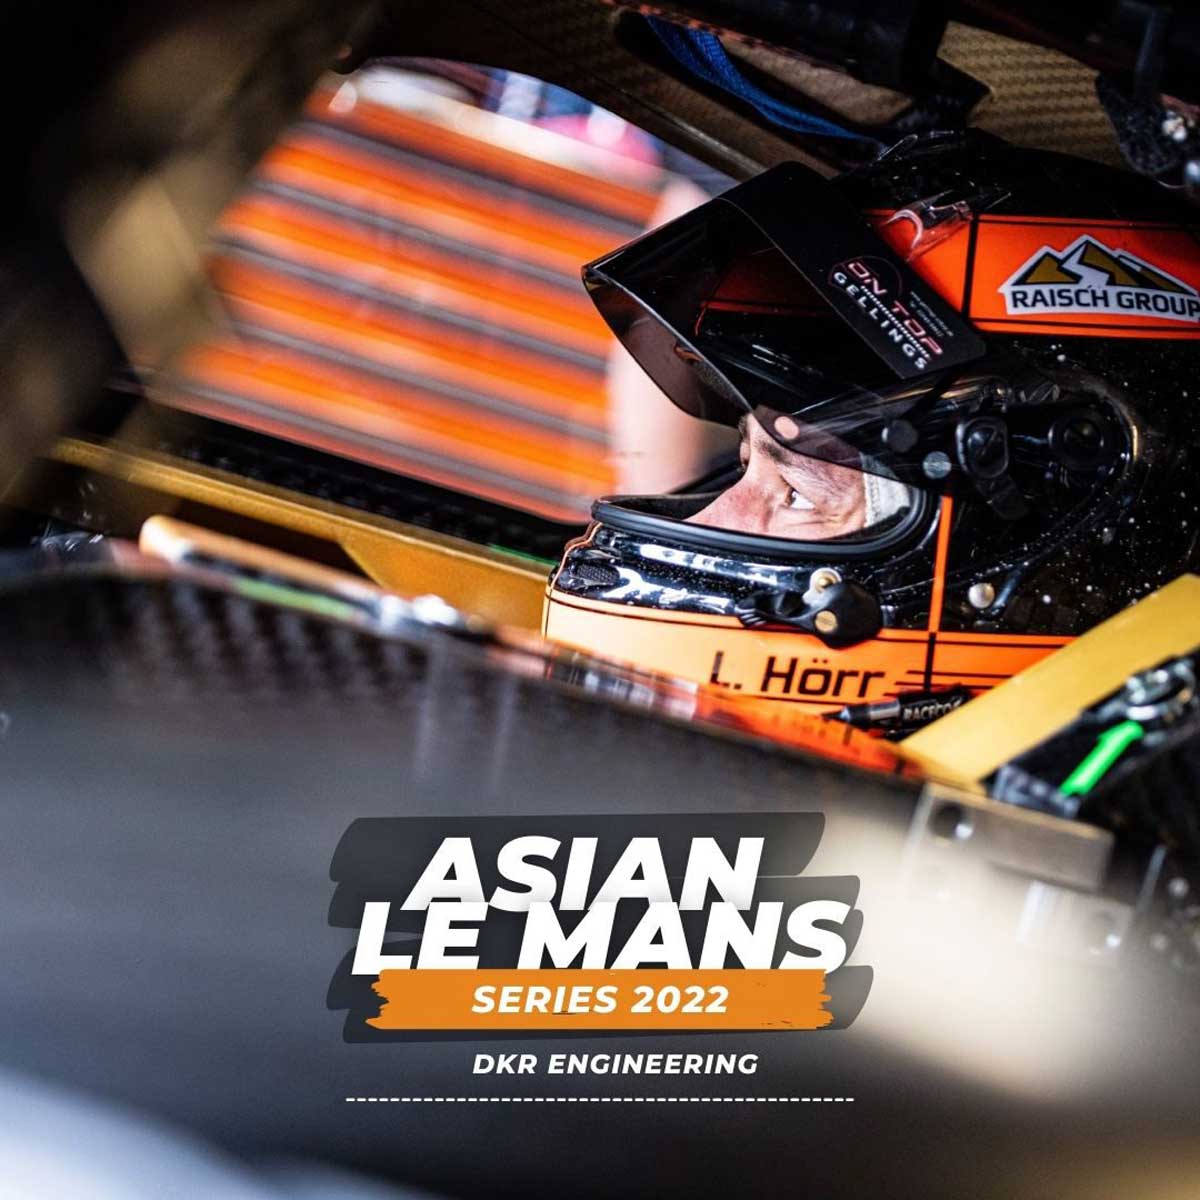 Laurents Hörr geht 2022 in der Asian Le Mans Series an den Start